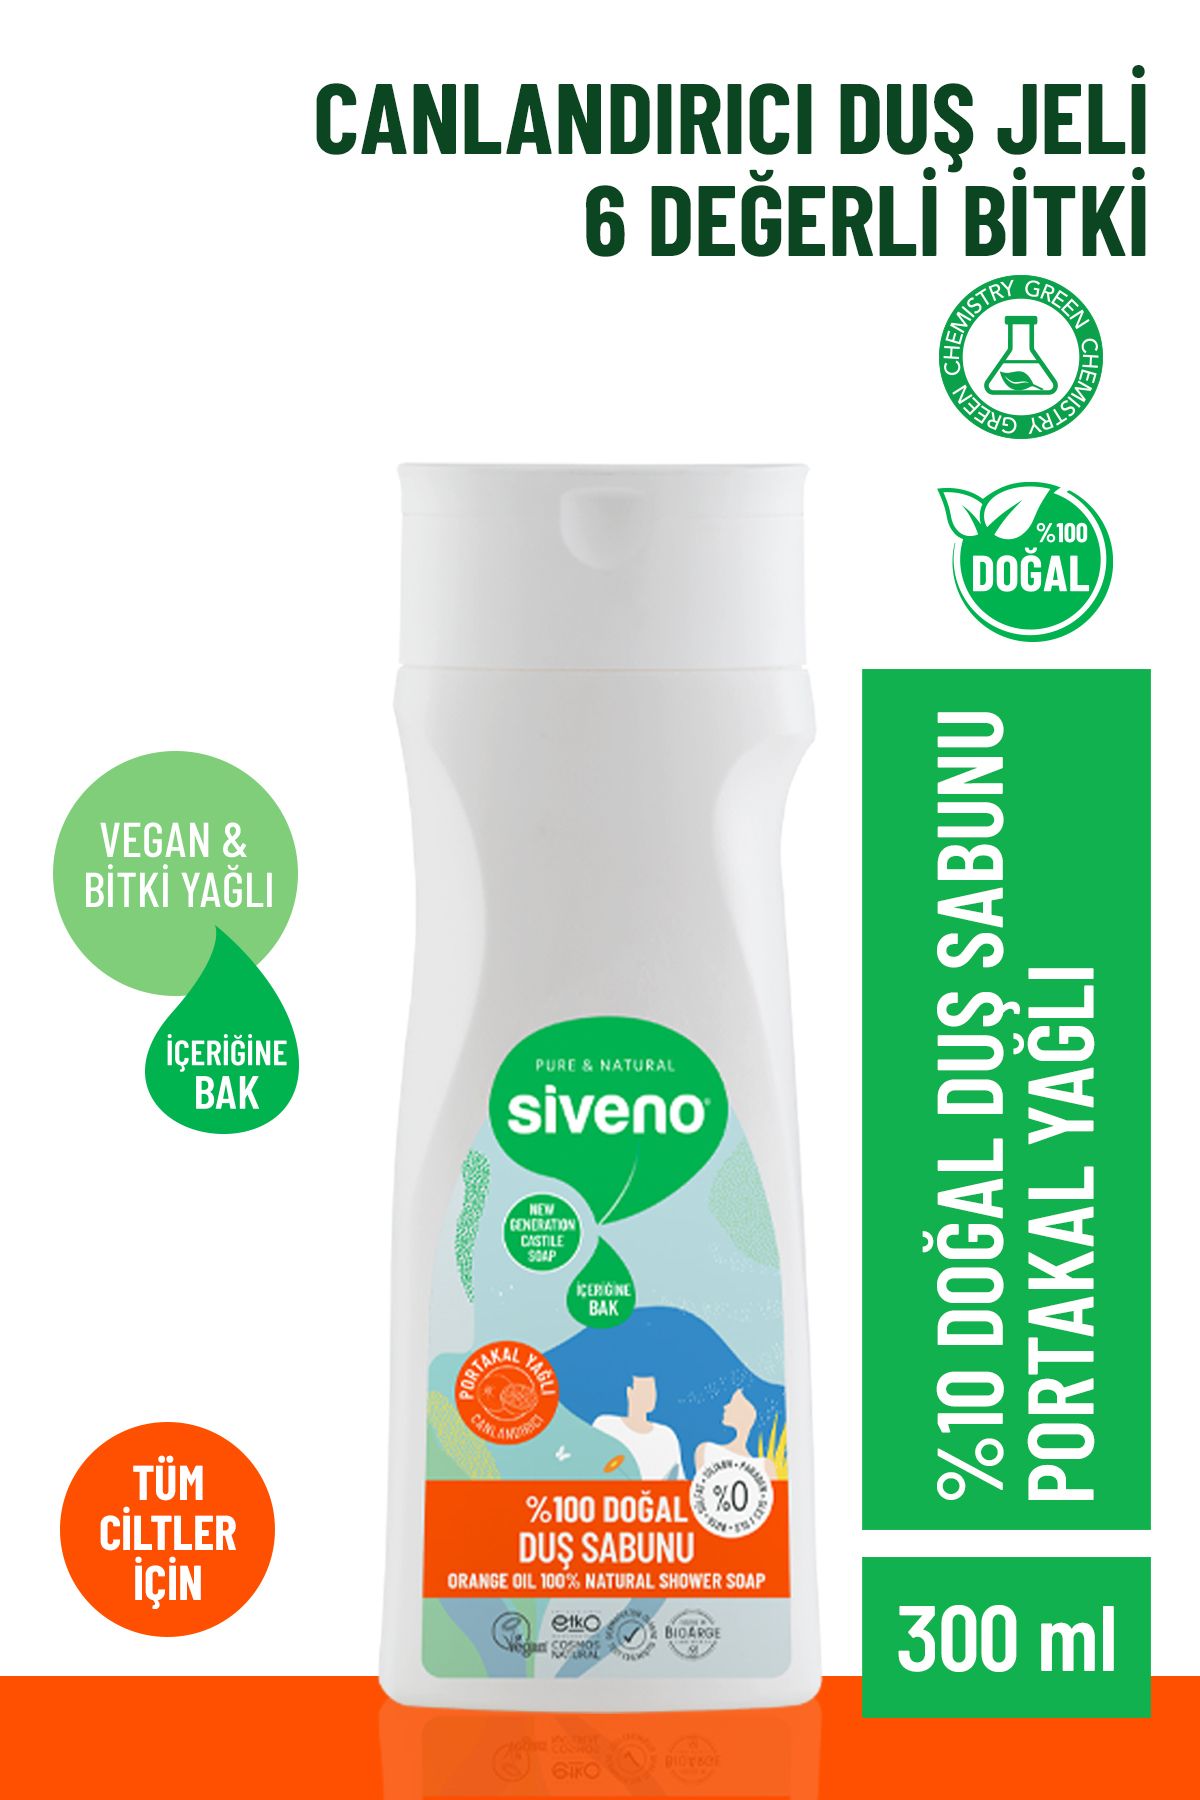 Siveno %100 Doğal Duş Sabunu Portakal Kokulu Canlandırıcı Duş Jeli 6 Değerli Bitki Vegan 300 ml